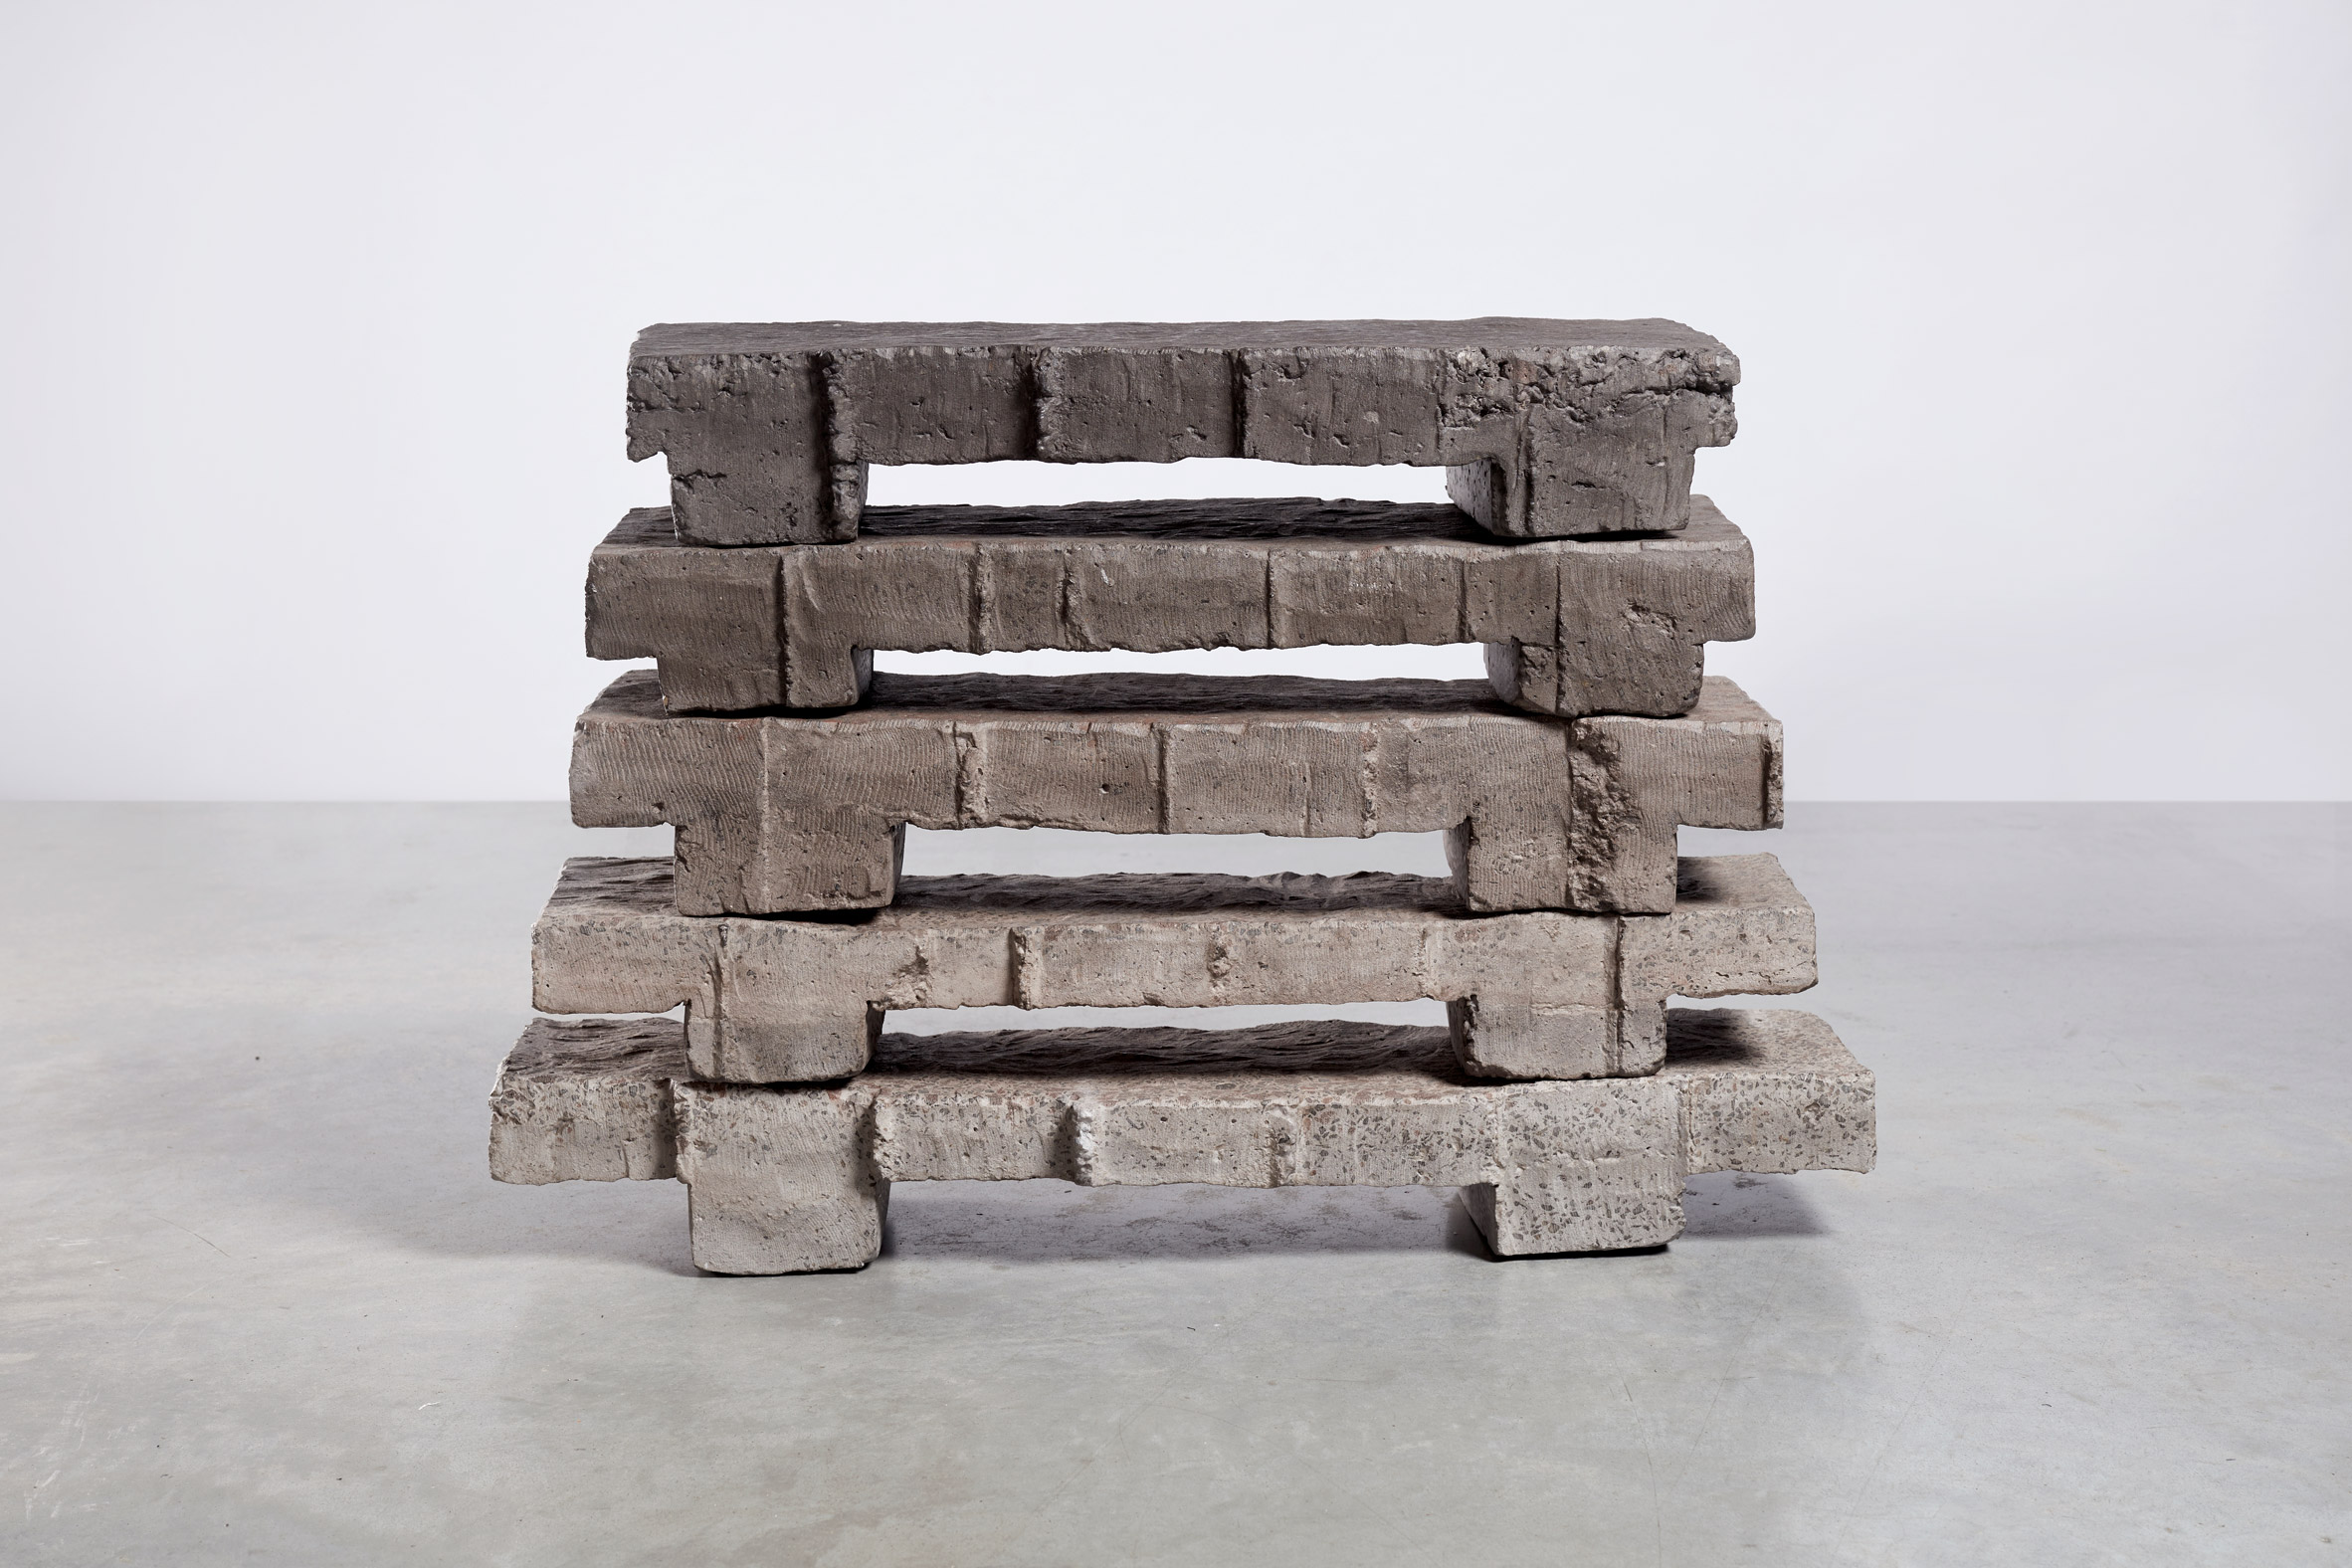 Bram Vanderbeke uses concrete waste blocks to create neolithic-looking furniture